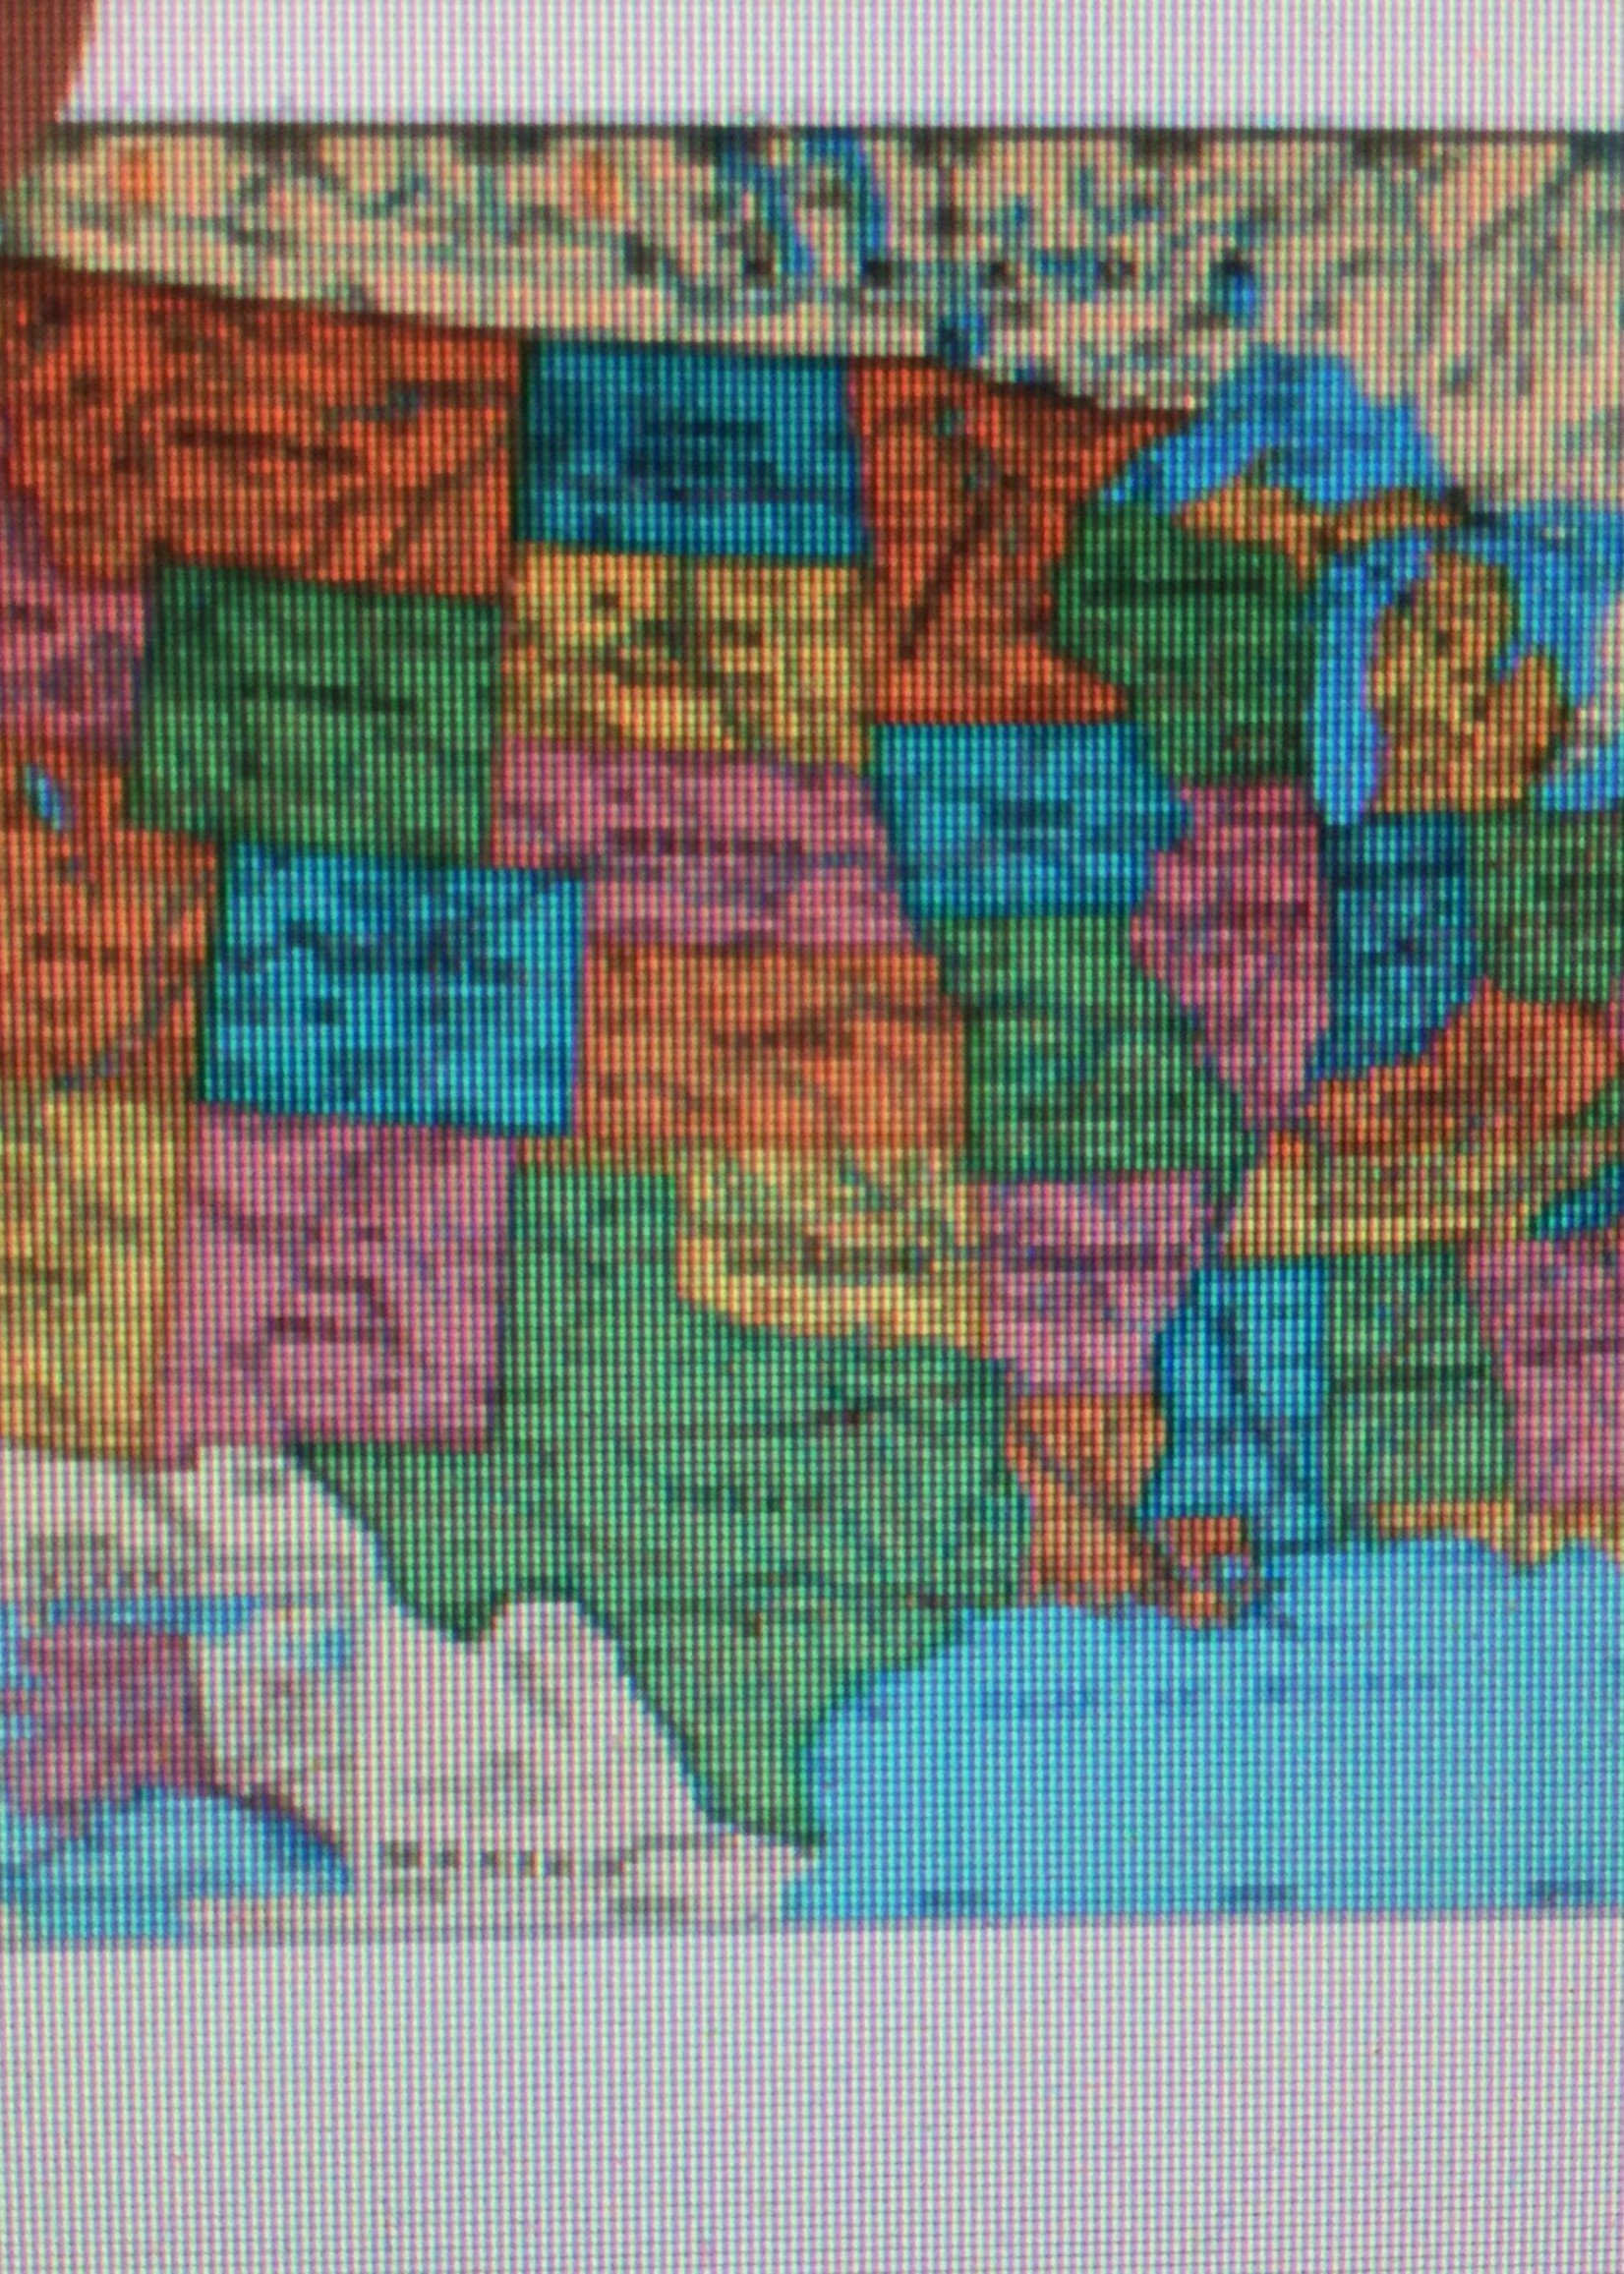 Laminated USA Wall Map